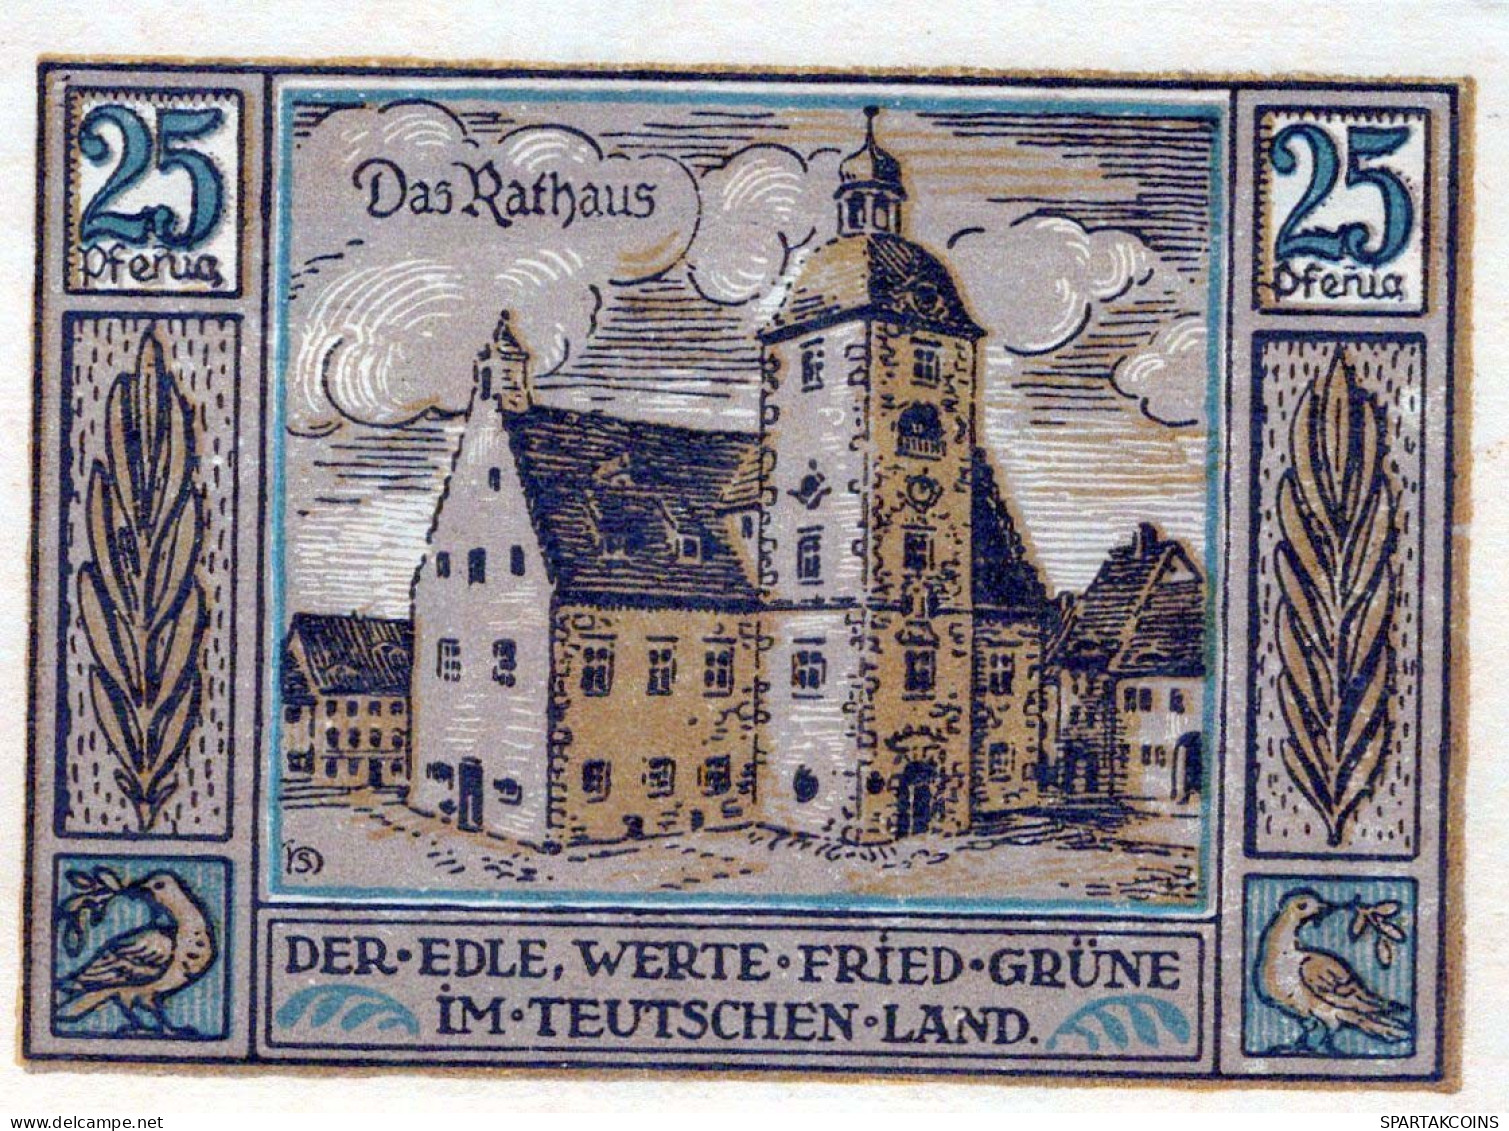 25 PFENNIG 1921 Stadt QUERFURT Saxony UNC DEUTSCHLAND Notgeld Banknote #PB850 - [11] Emissioni Locali